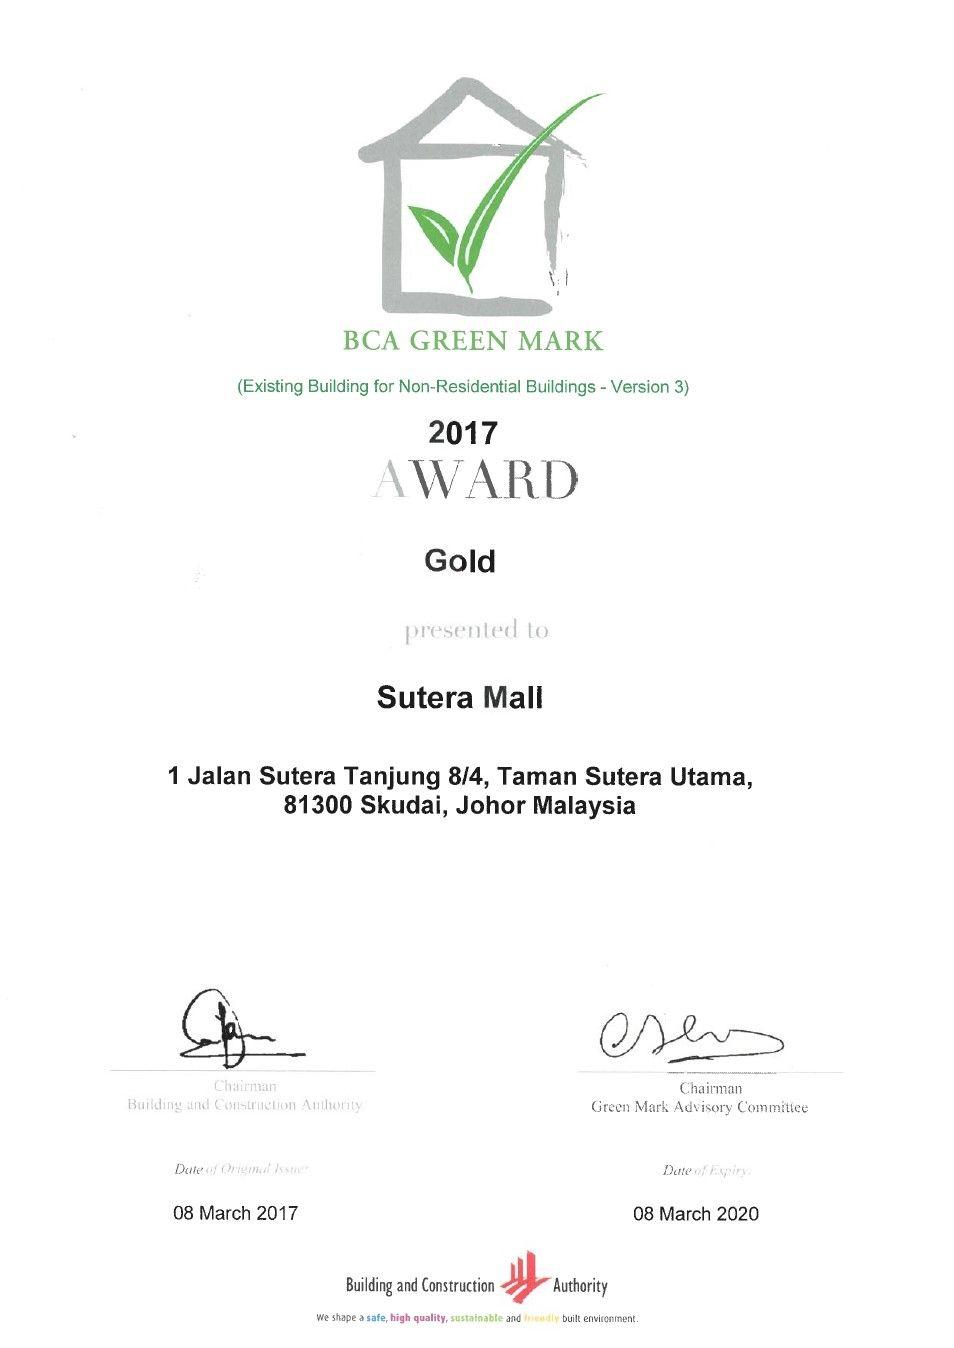 BCA Singapore Logo - Green Mark Gold Award, BCA Singapore. Tanah Sutera. Property Johor